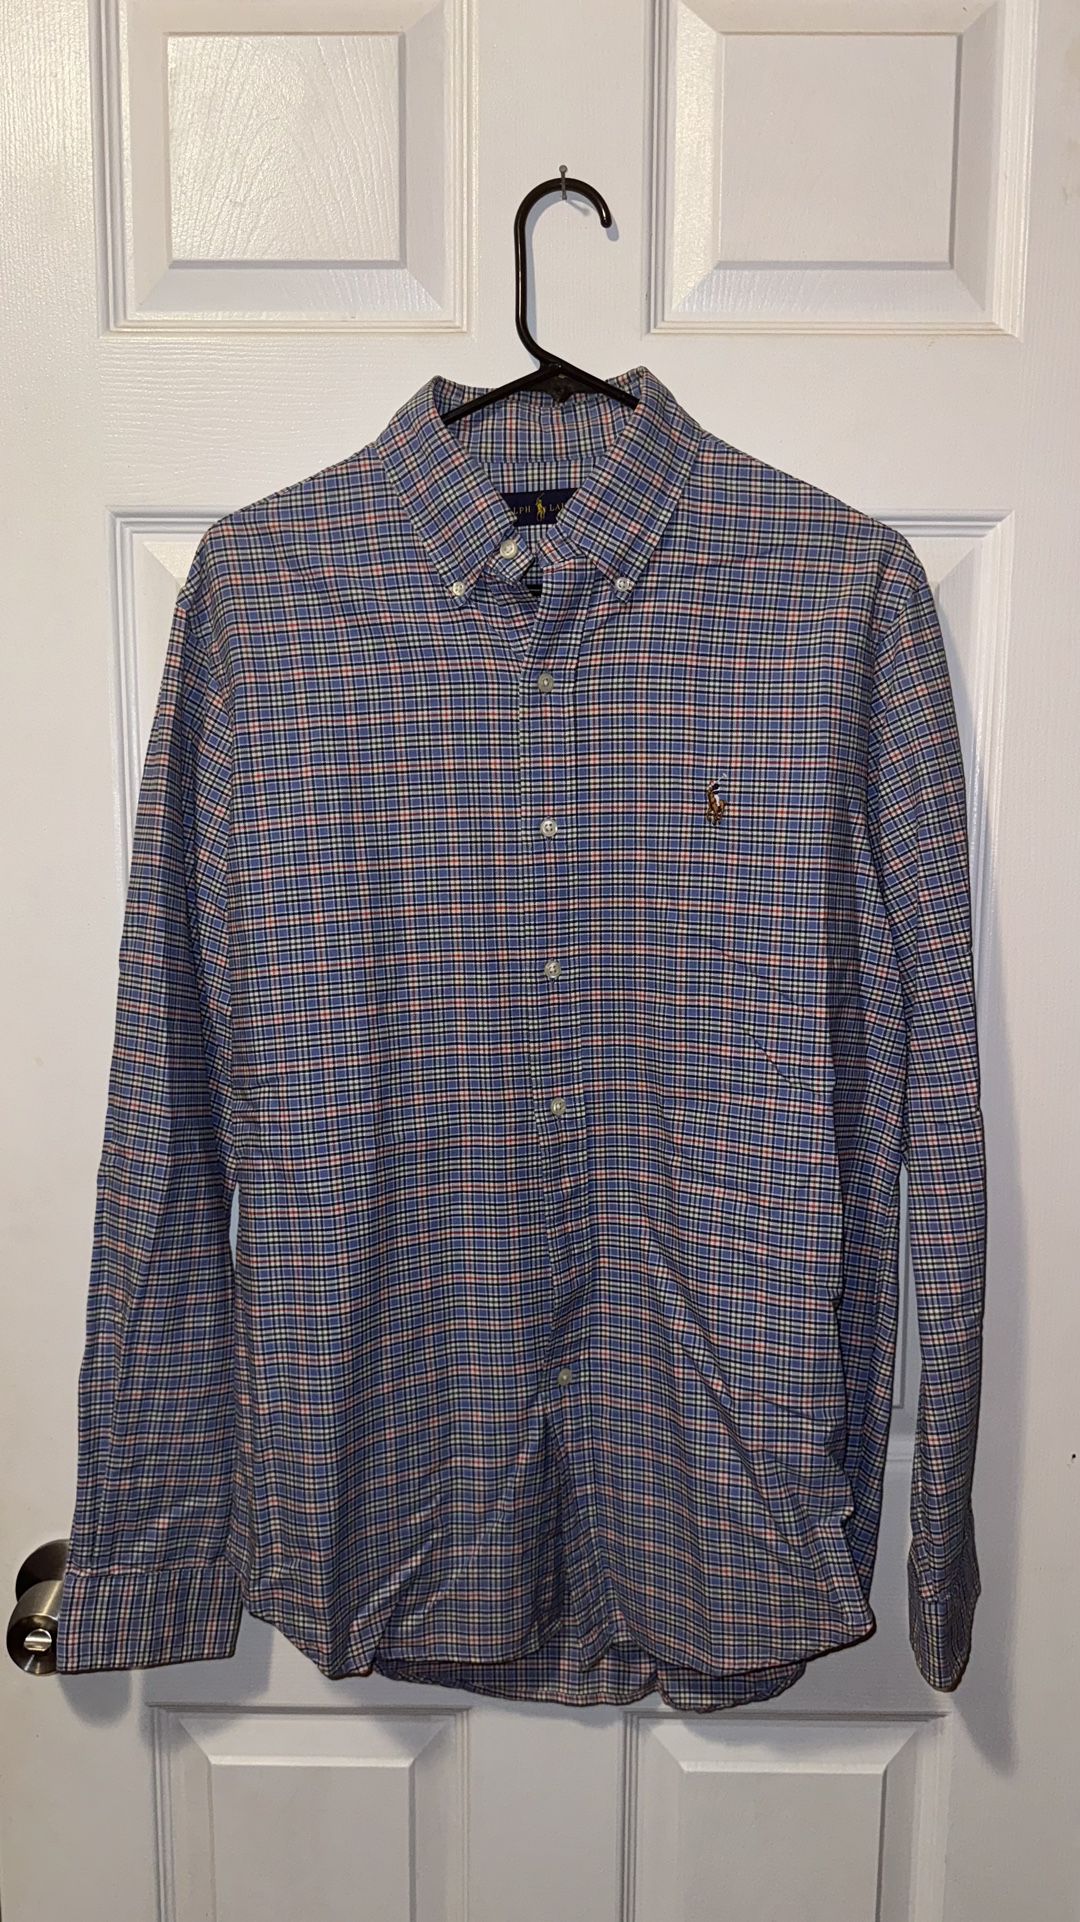 Men’s Ralph Lauren Shirts., T-shirts, Polos, Button Up Shirts 